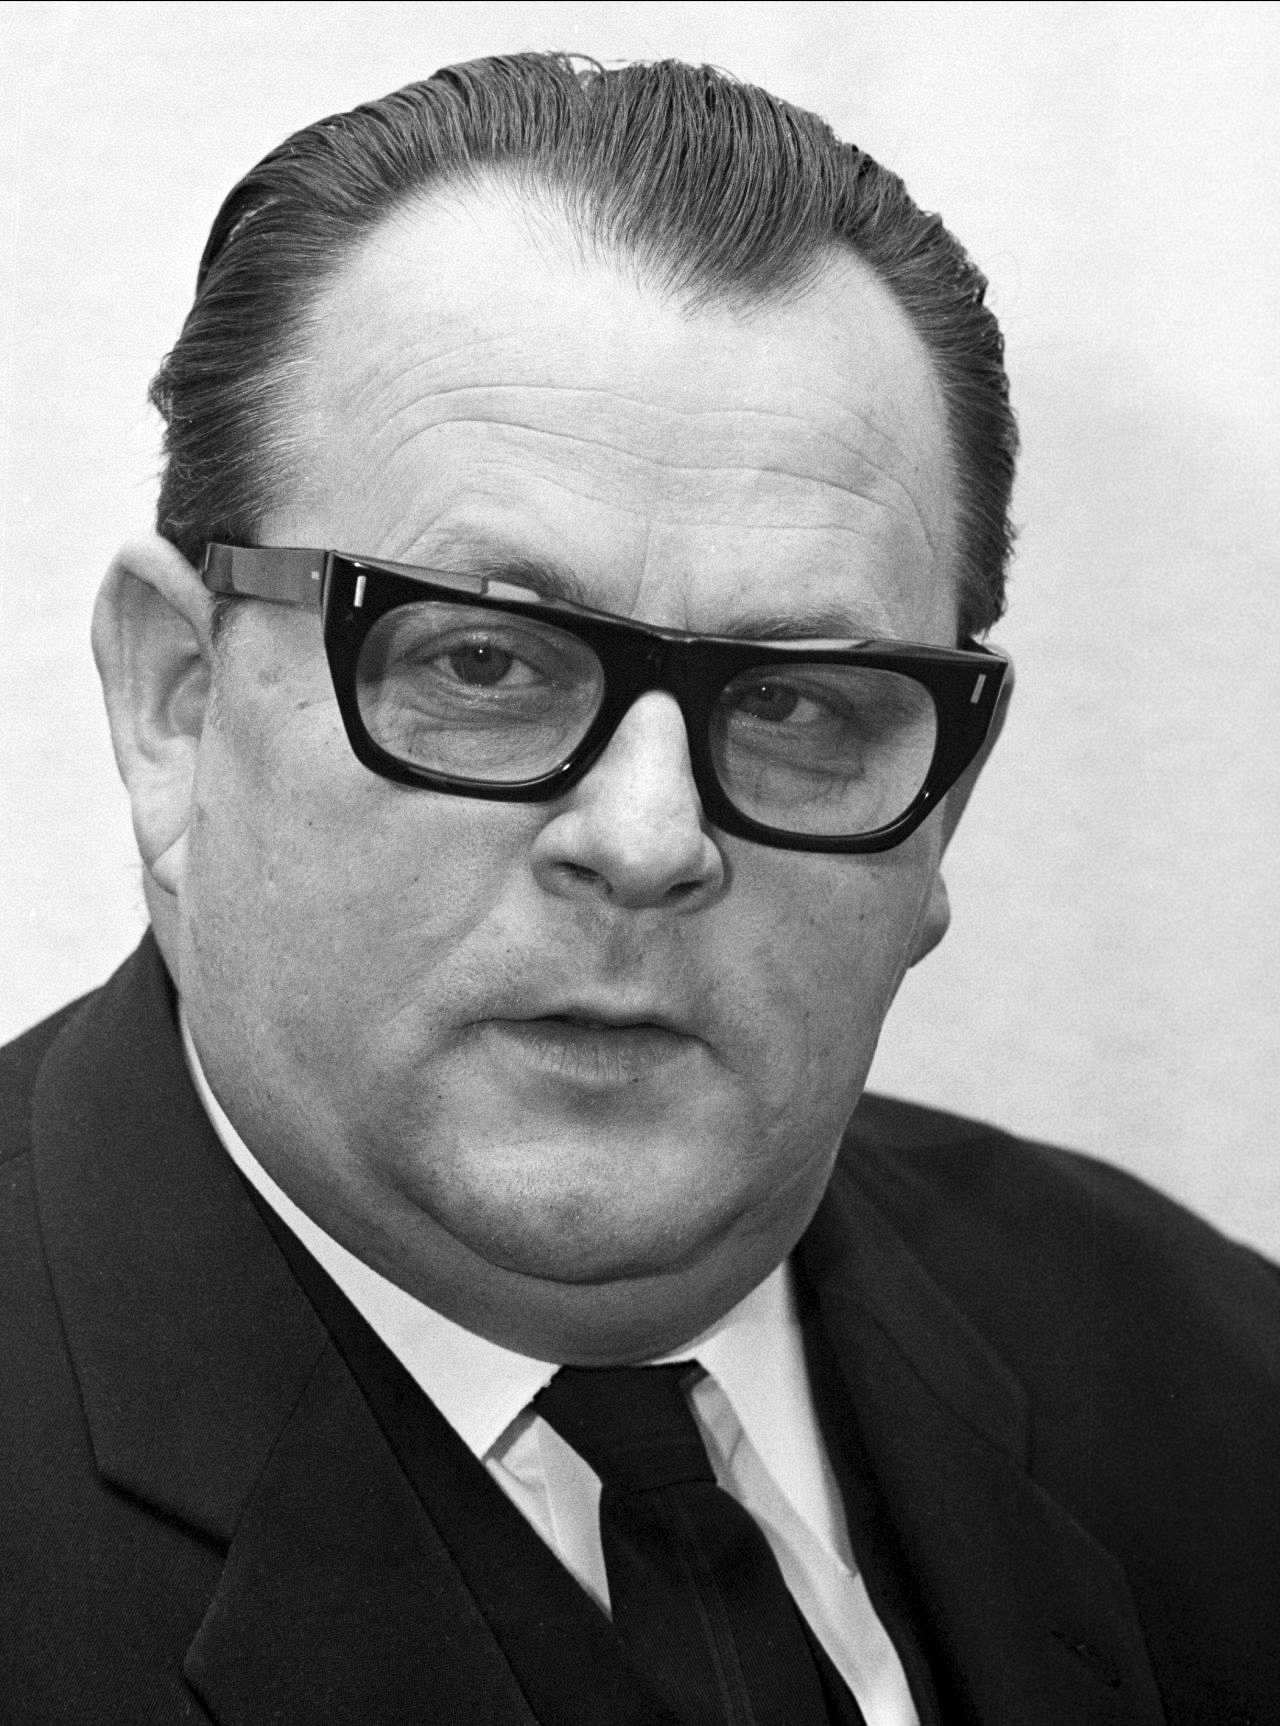 Porträtaufnahme von Hans-Jürgen Wischnewski, Bundesminister für wirtschaftliche Zusammenarbeit (1966-1968).